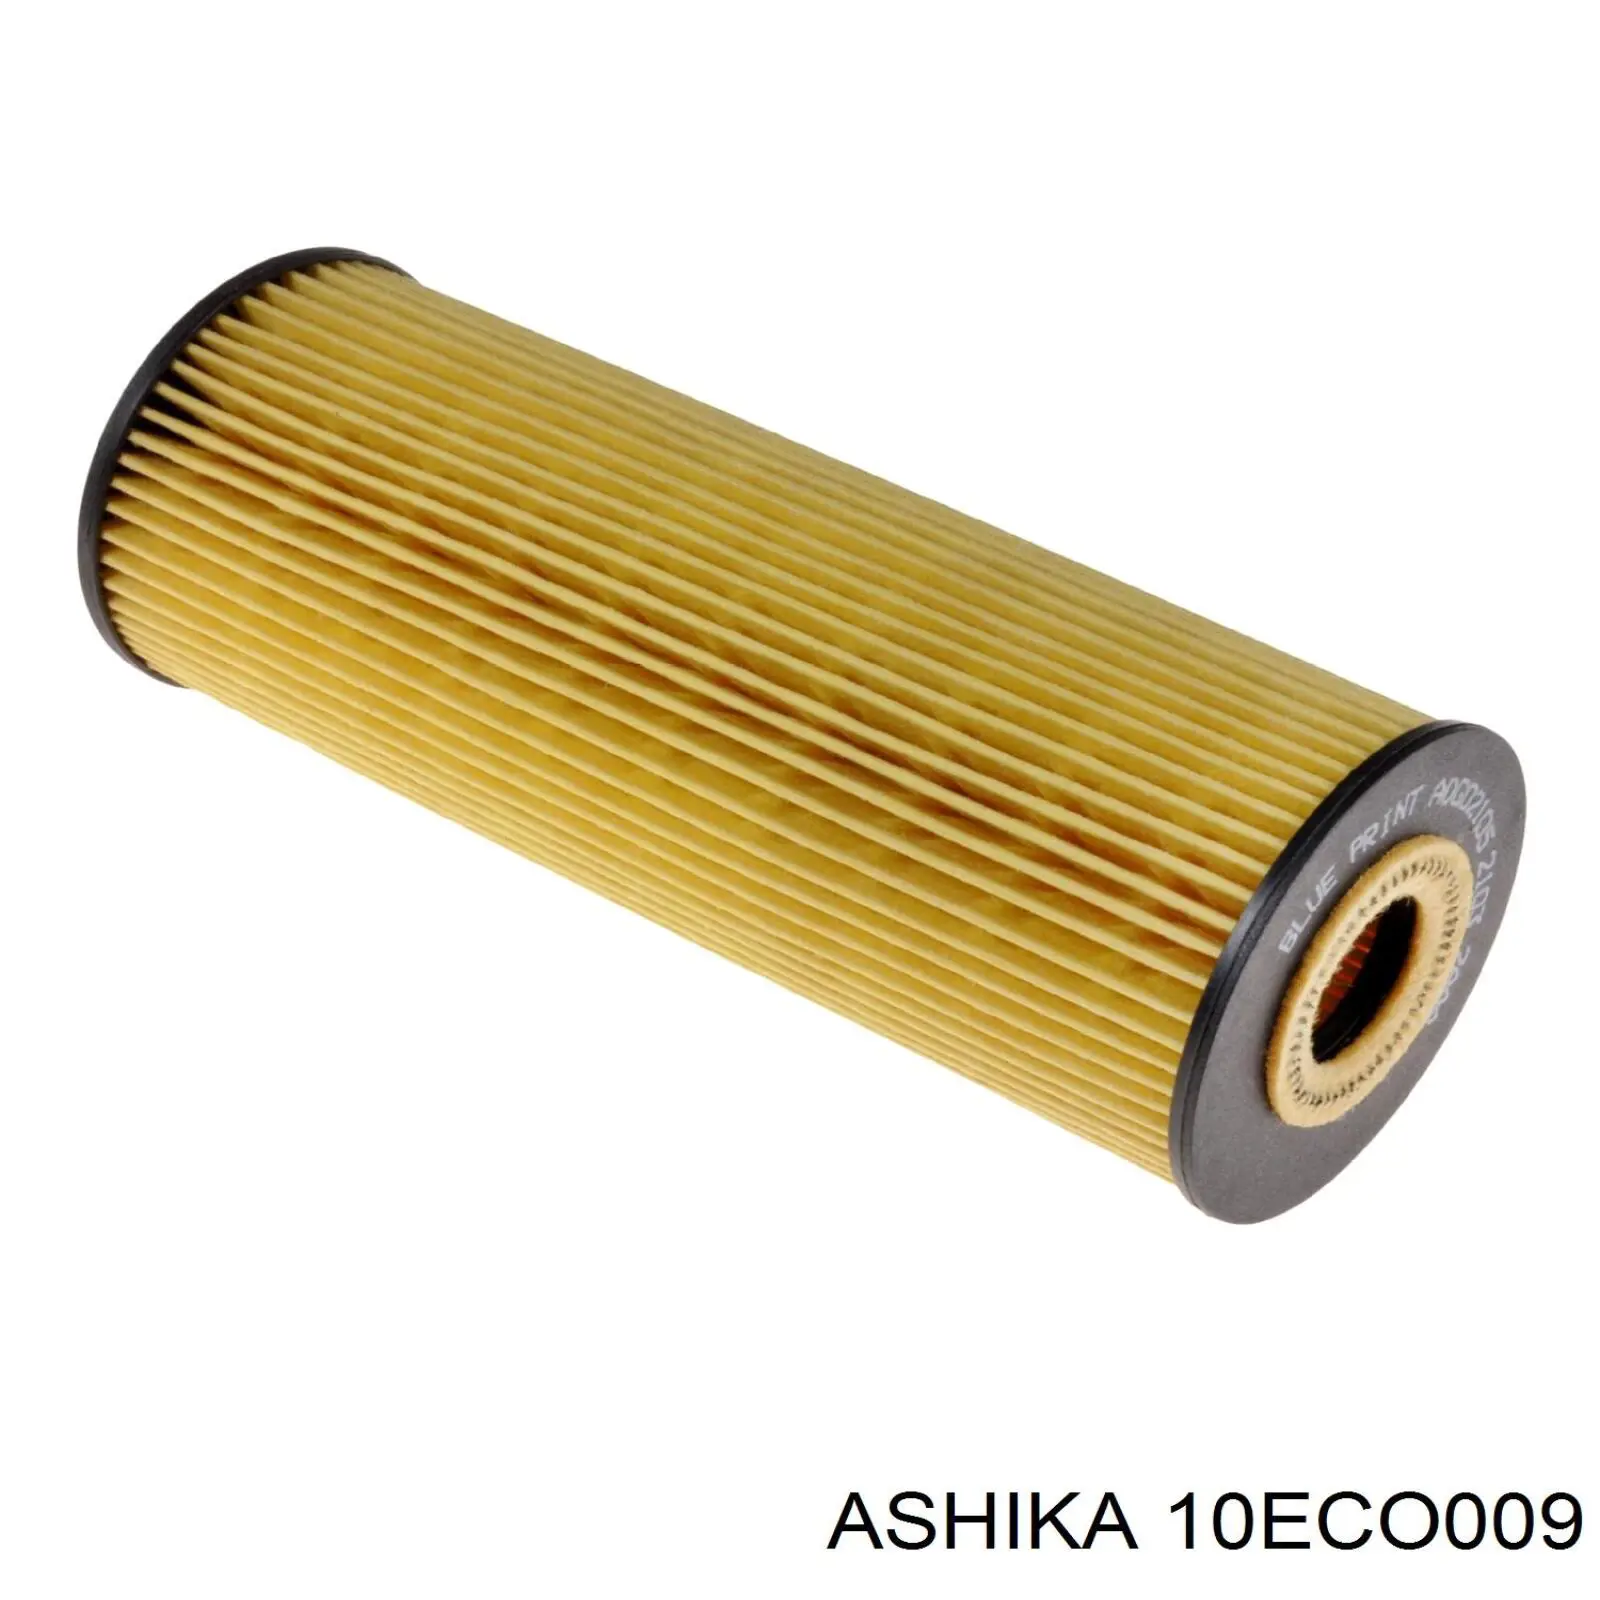 10-ECO009 Ashika filtro de aceite